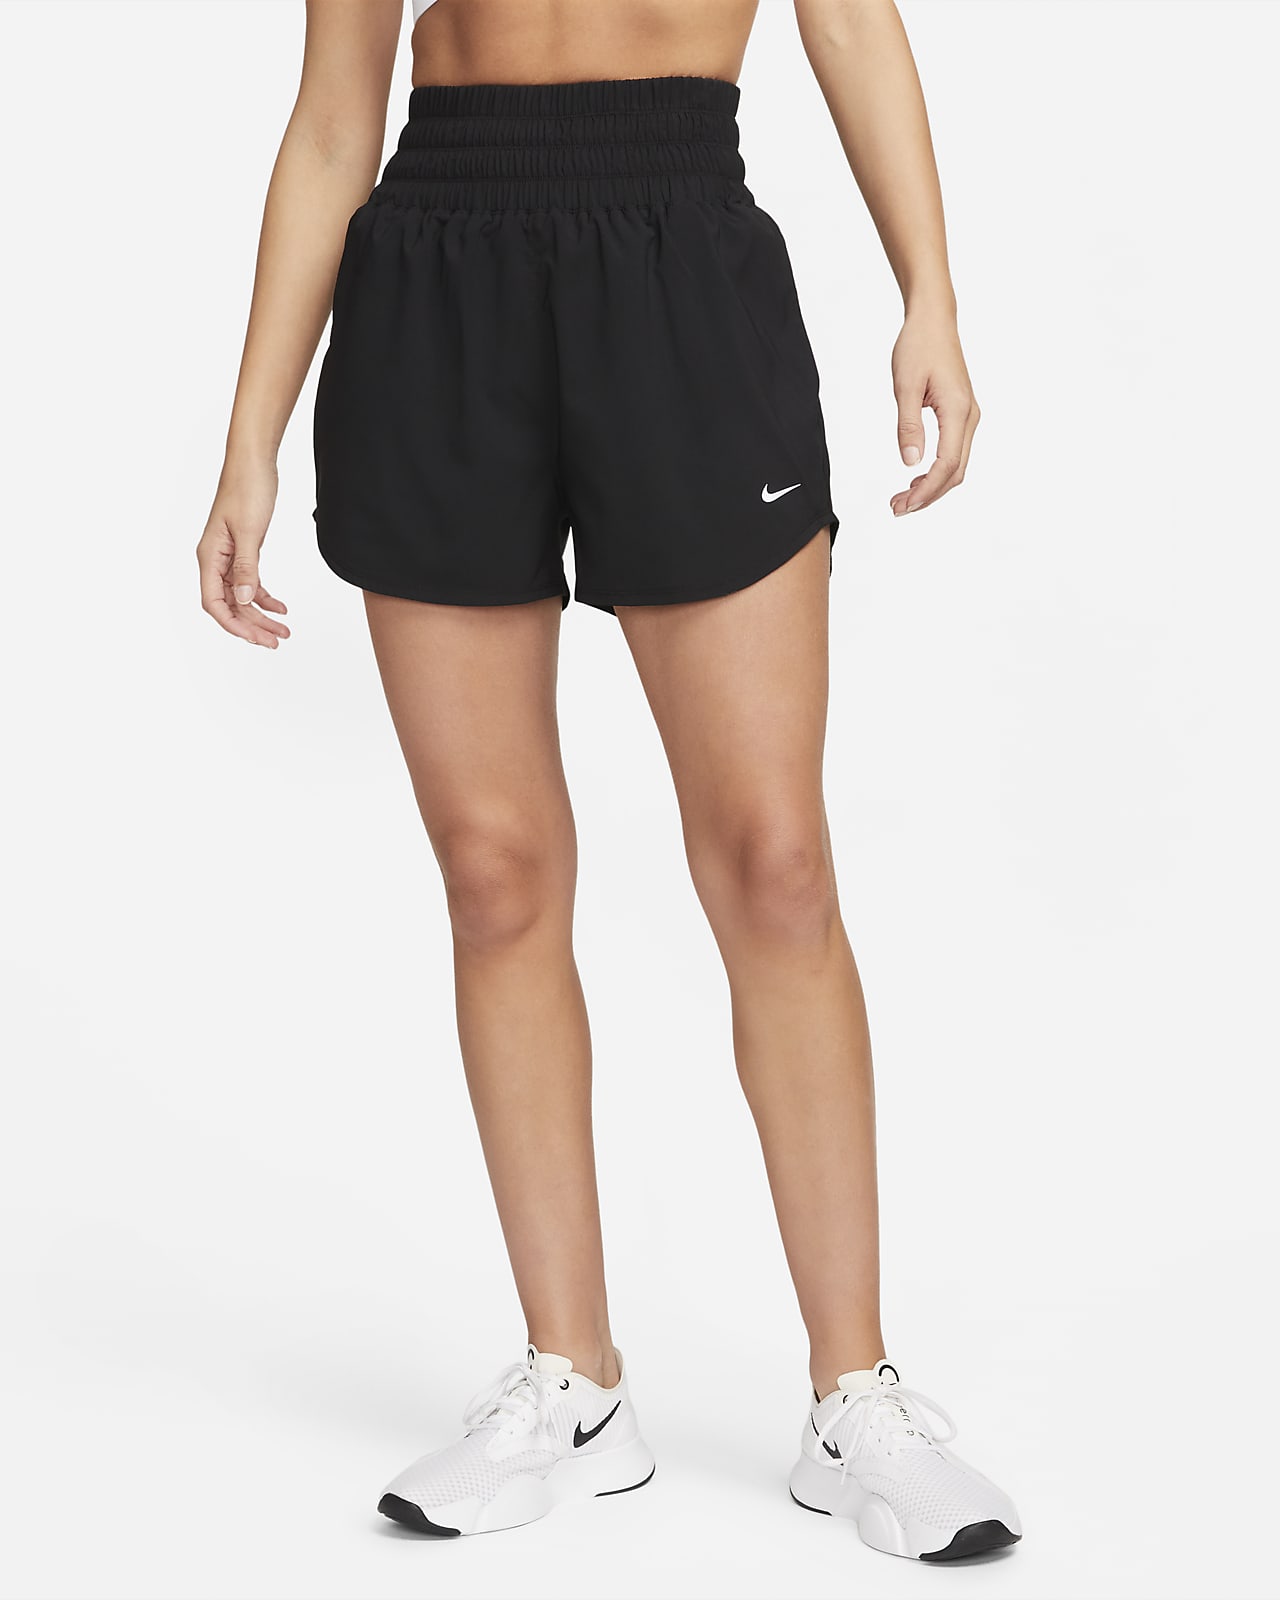 Short taille ultra-haute avec sous-short intégré 8 cm Dri-FIT Nike One pour femme